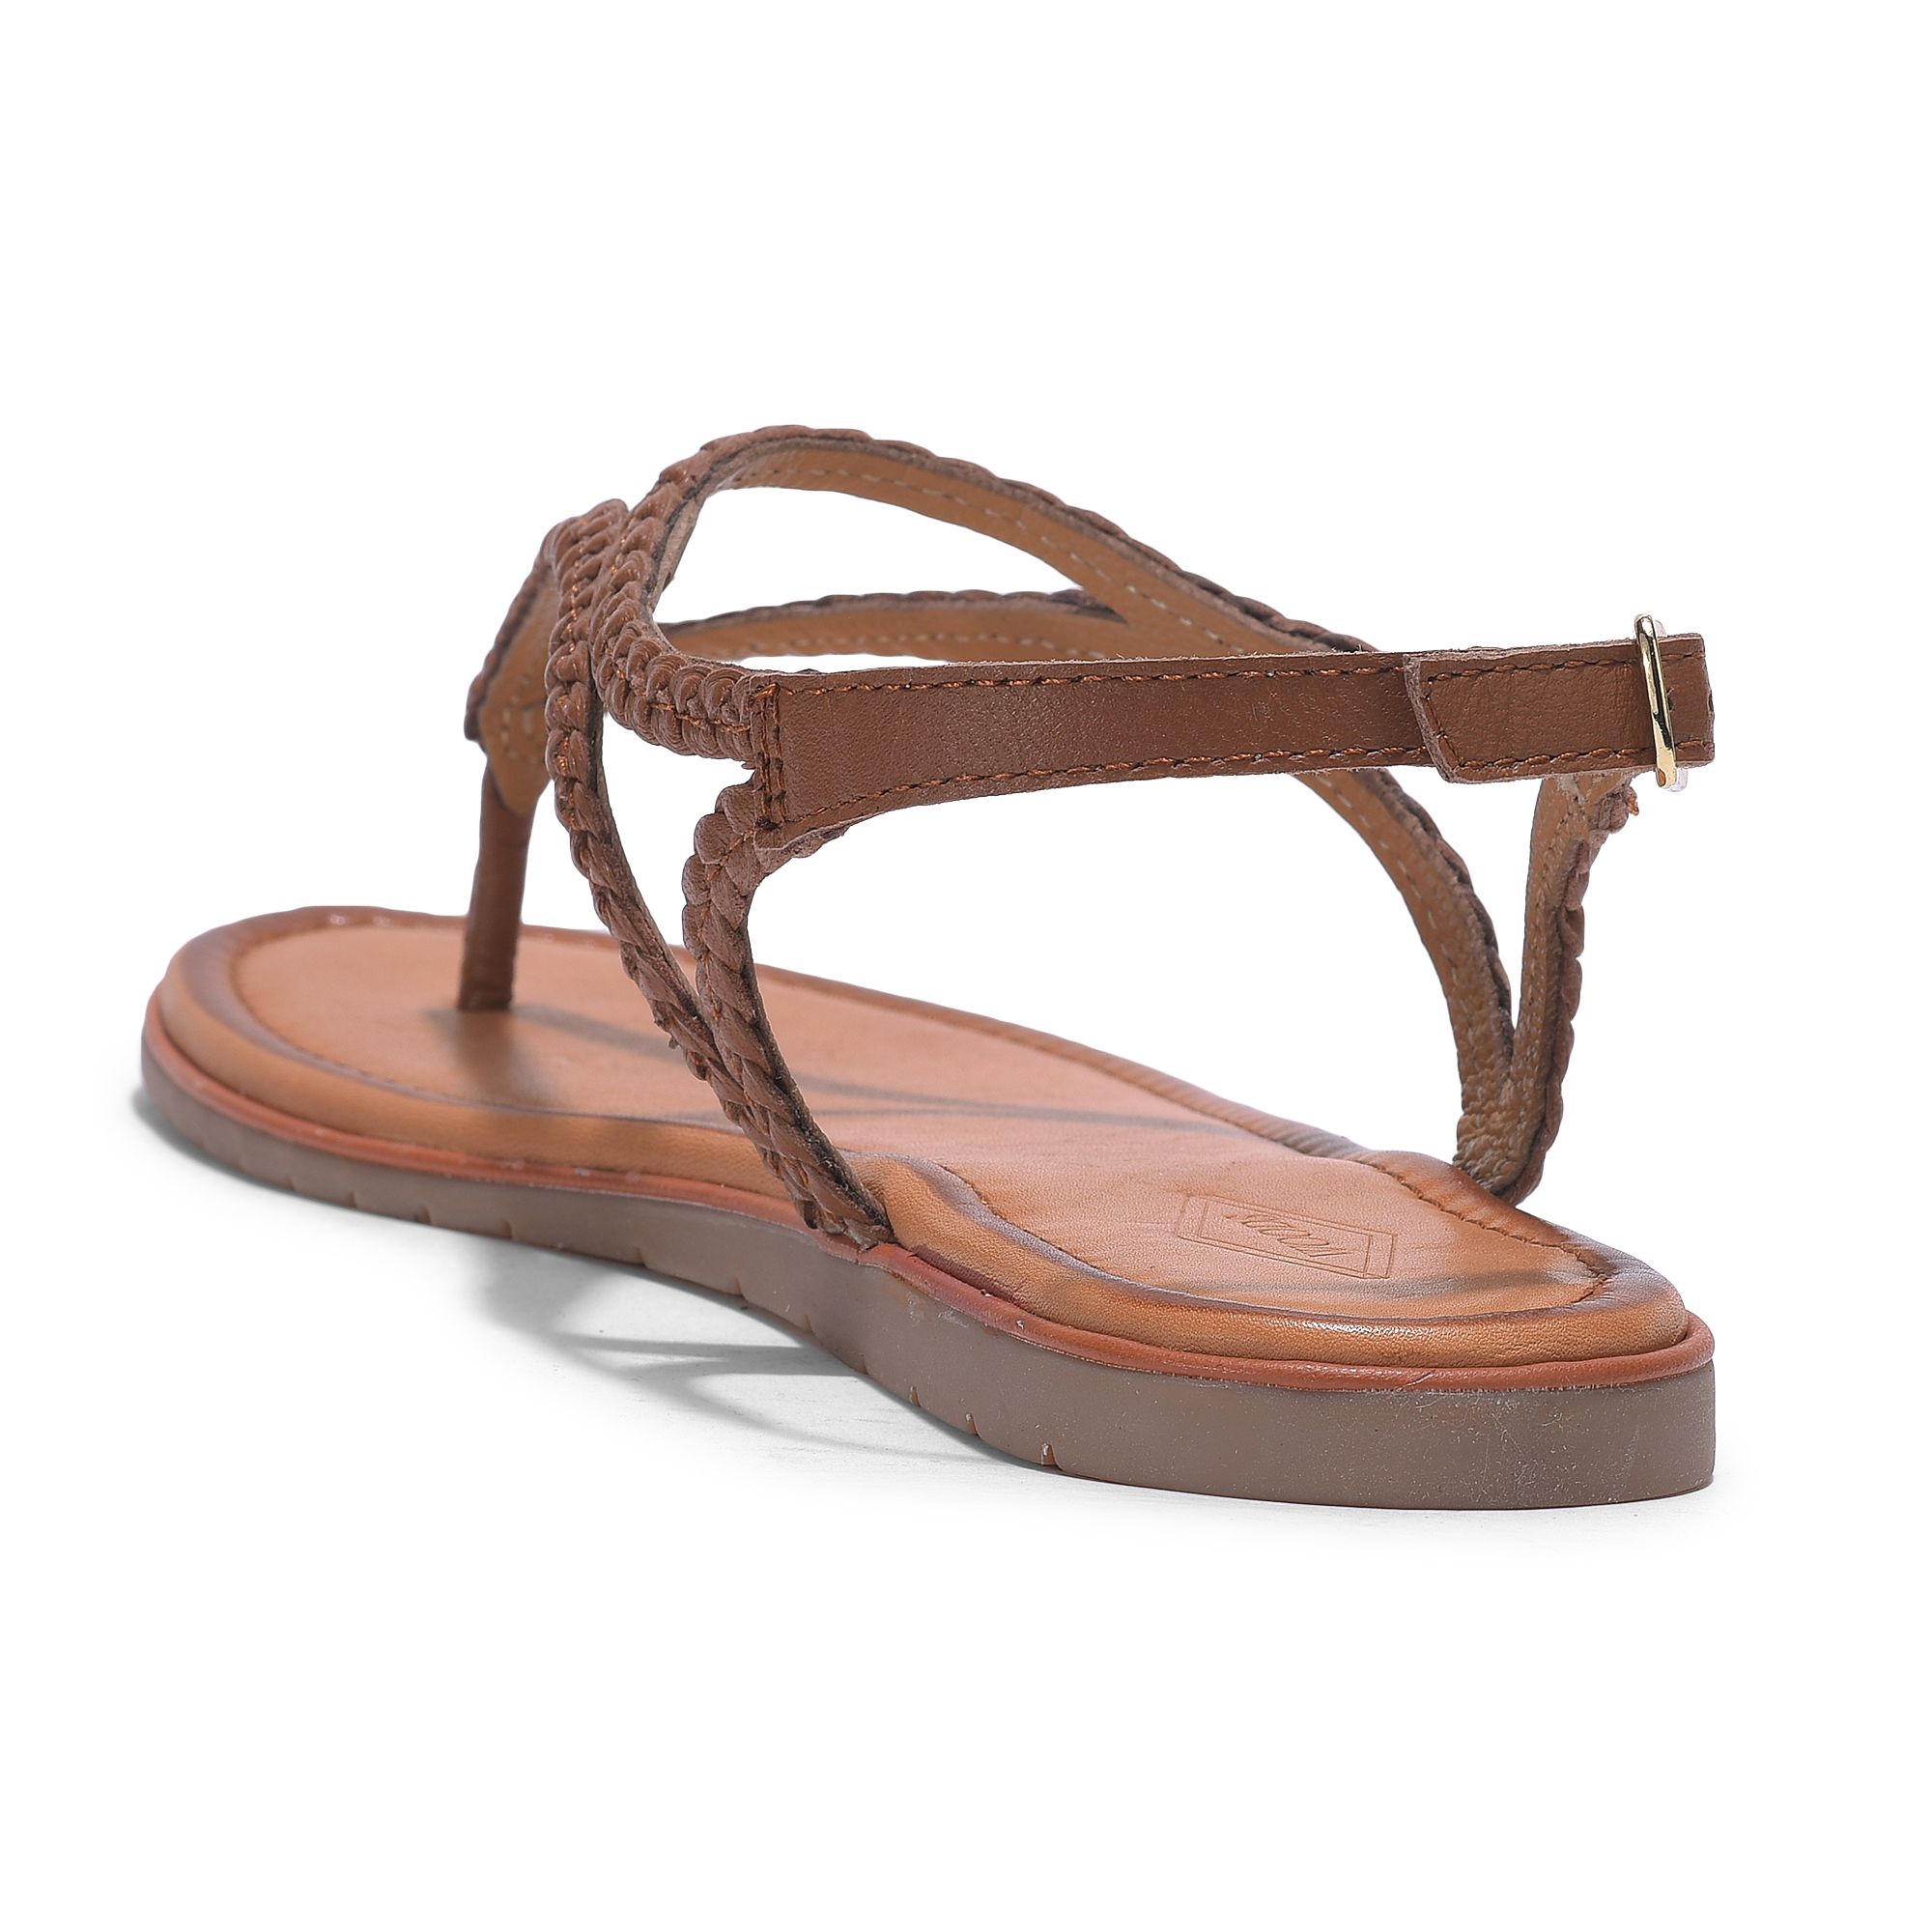 Tan t-strap sandal for women